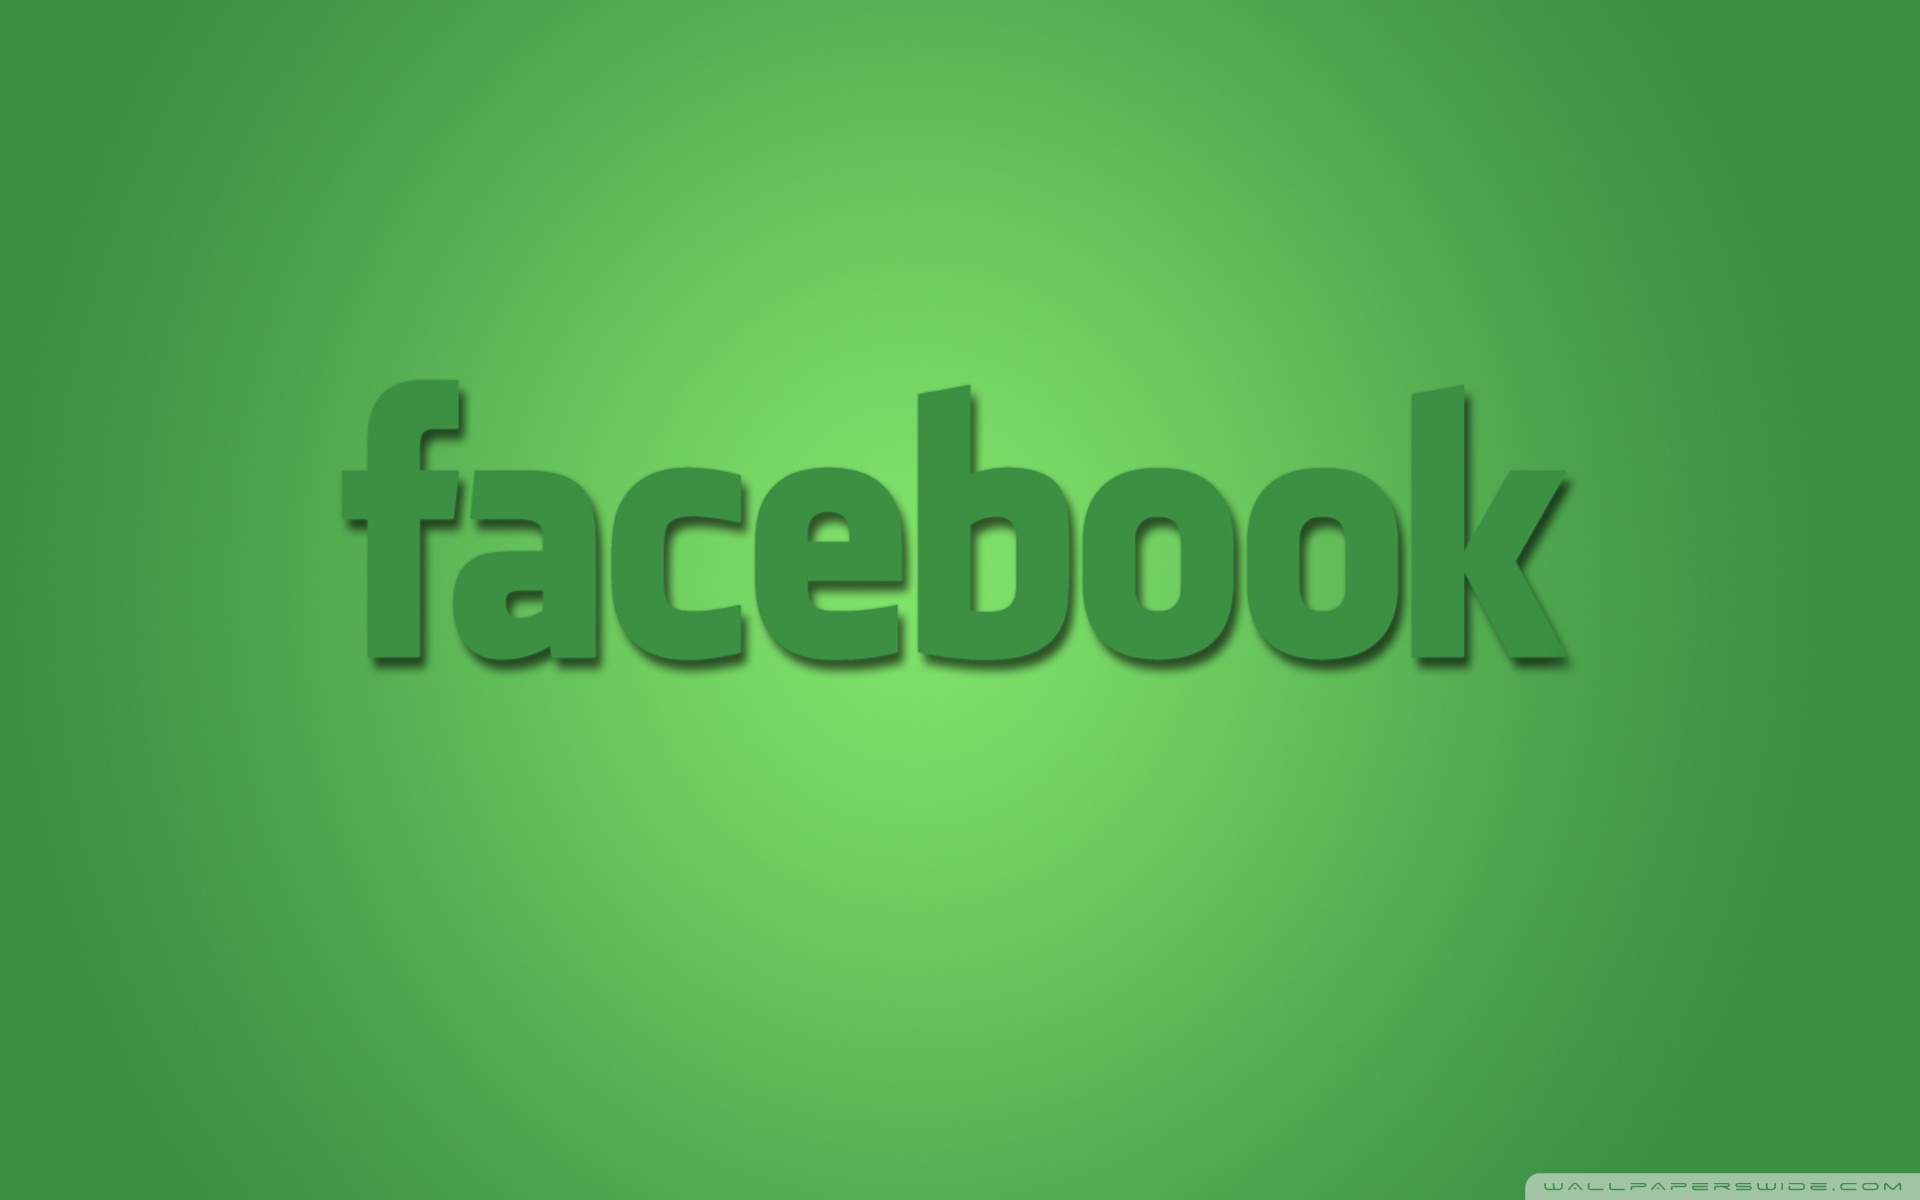 Facebook Green - HD Wallpaper 